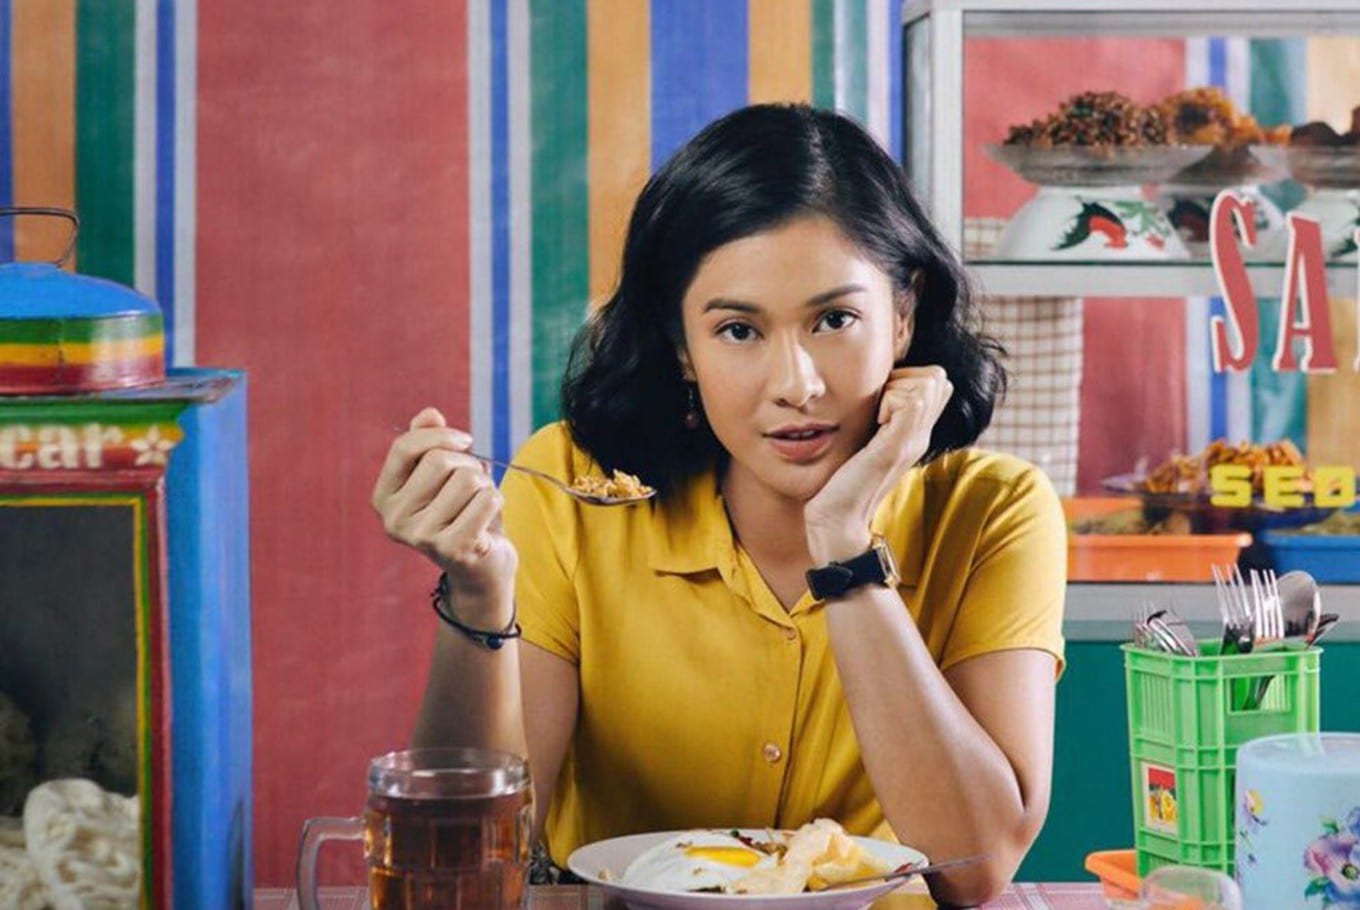 Una donna indonesiana con la camicetta gialla mangia un piatto di pollo. Sullo sfondo una parete colorata, con righe verticali rosse, blu, verdi e arancioni